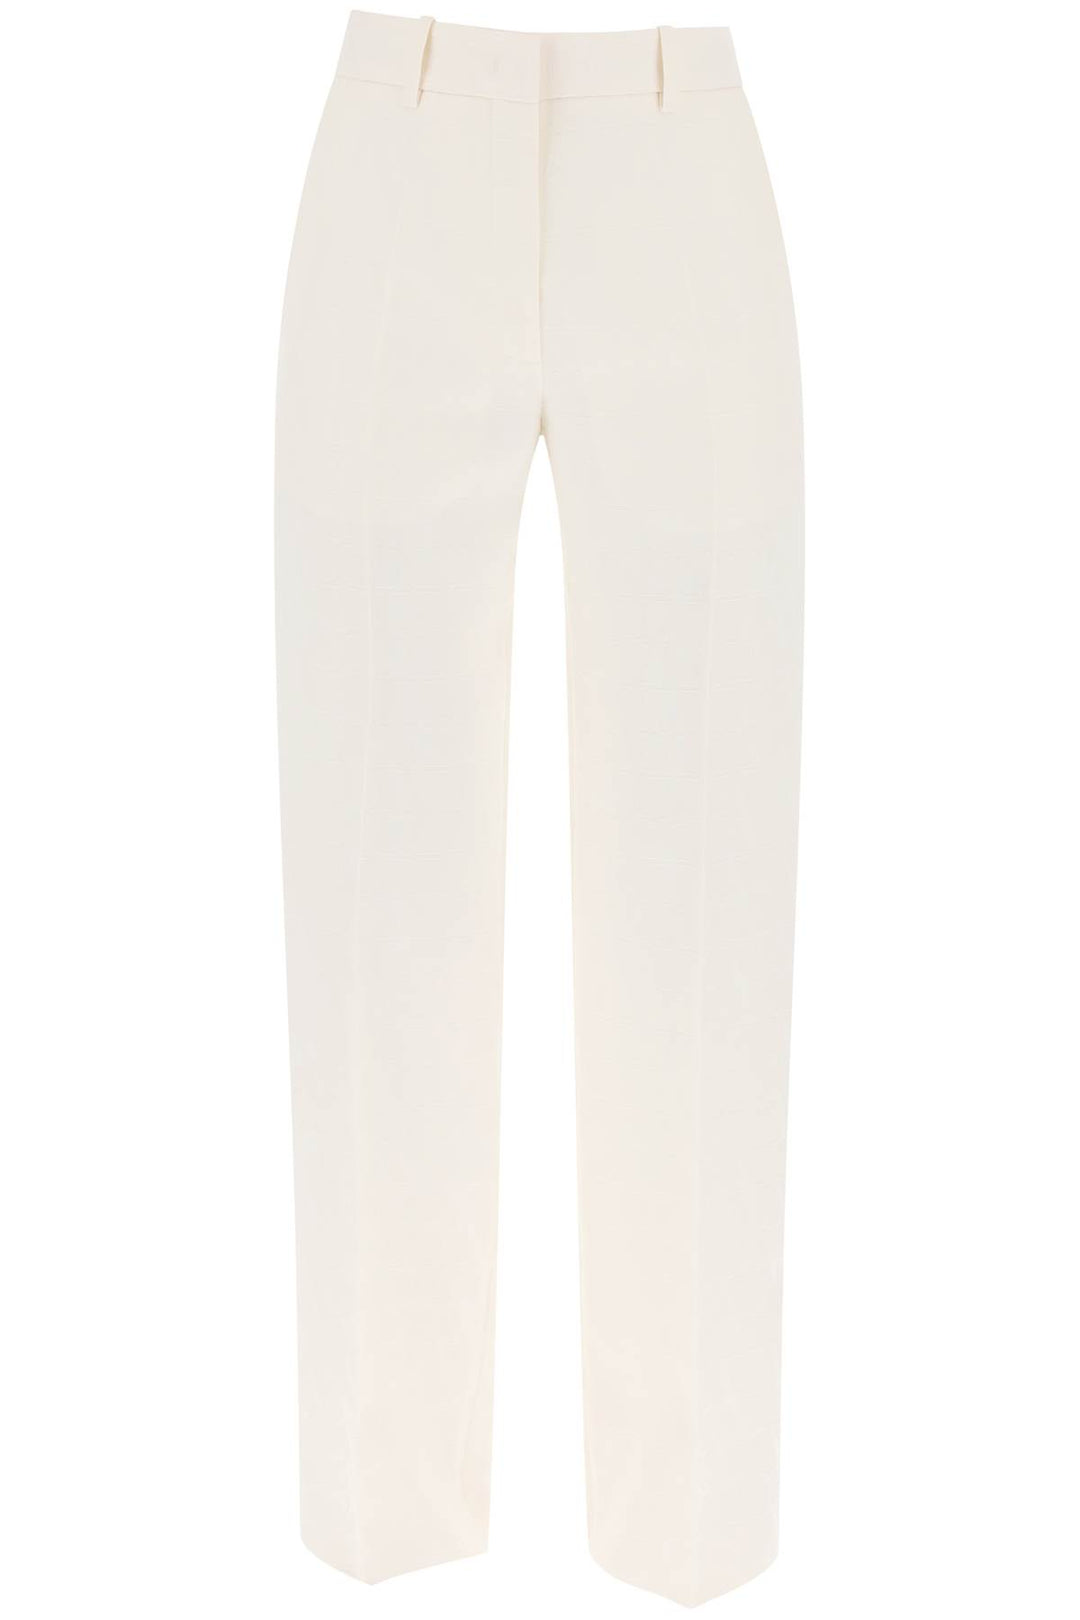 Valentino Garavani Toile Iconographe Pants In Crepe Couture   White